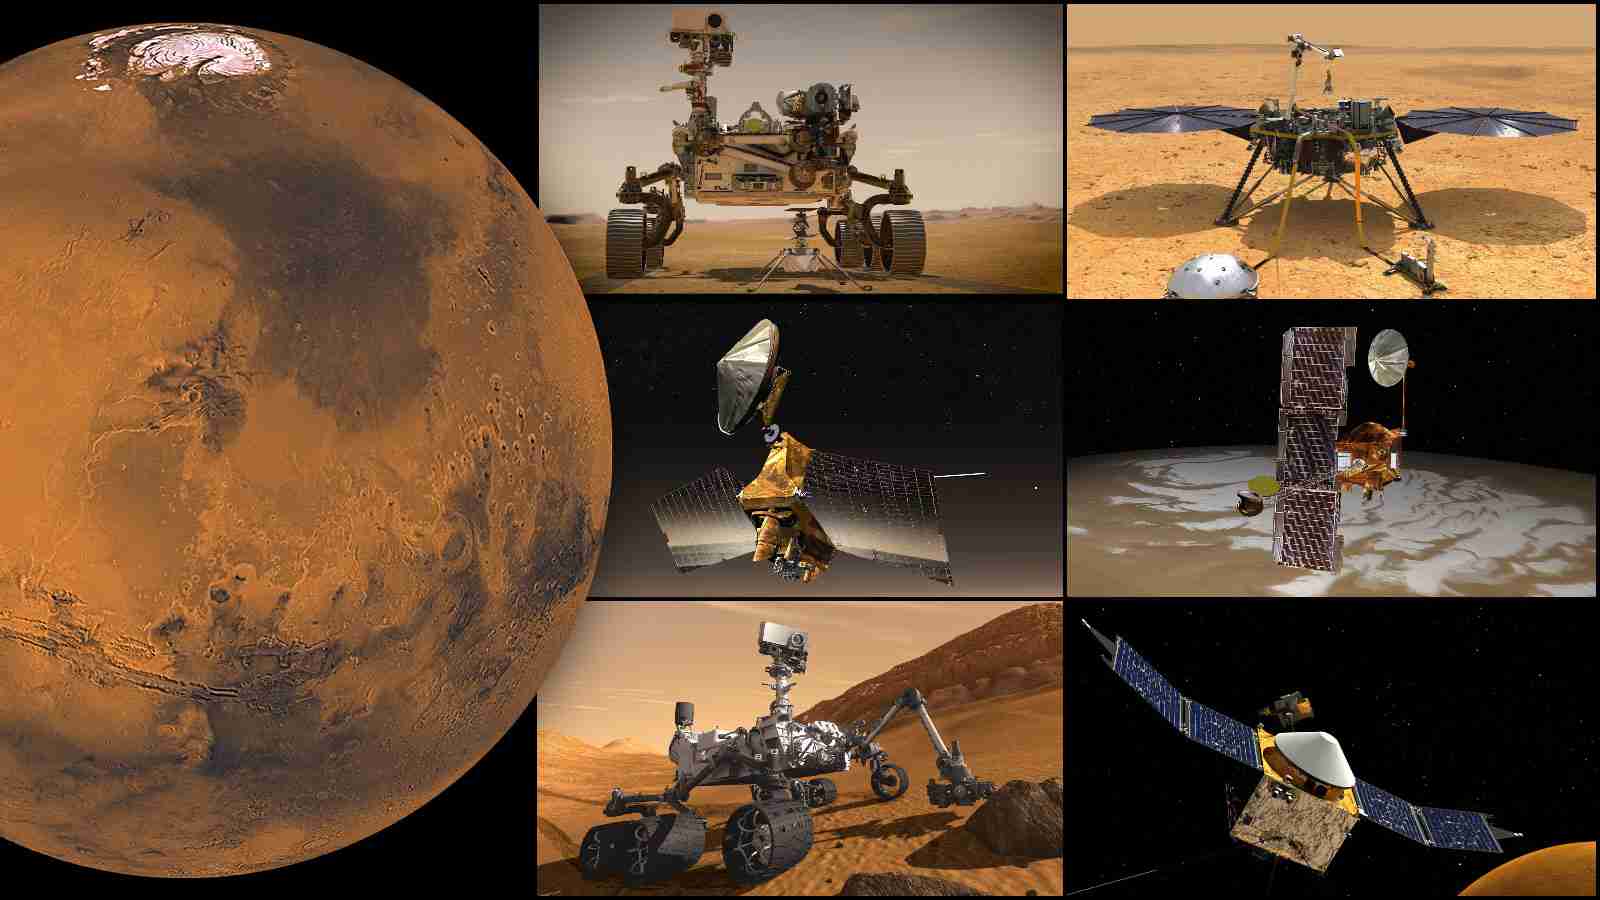 Kamera rovera na Marsu snimila nešto čudno: NASA za sad nema objašnjenje